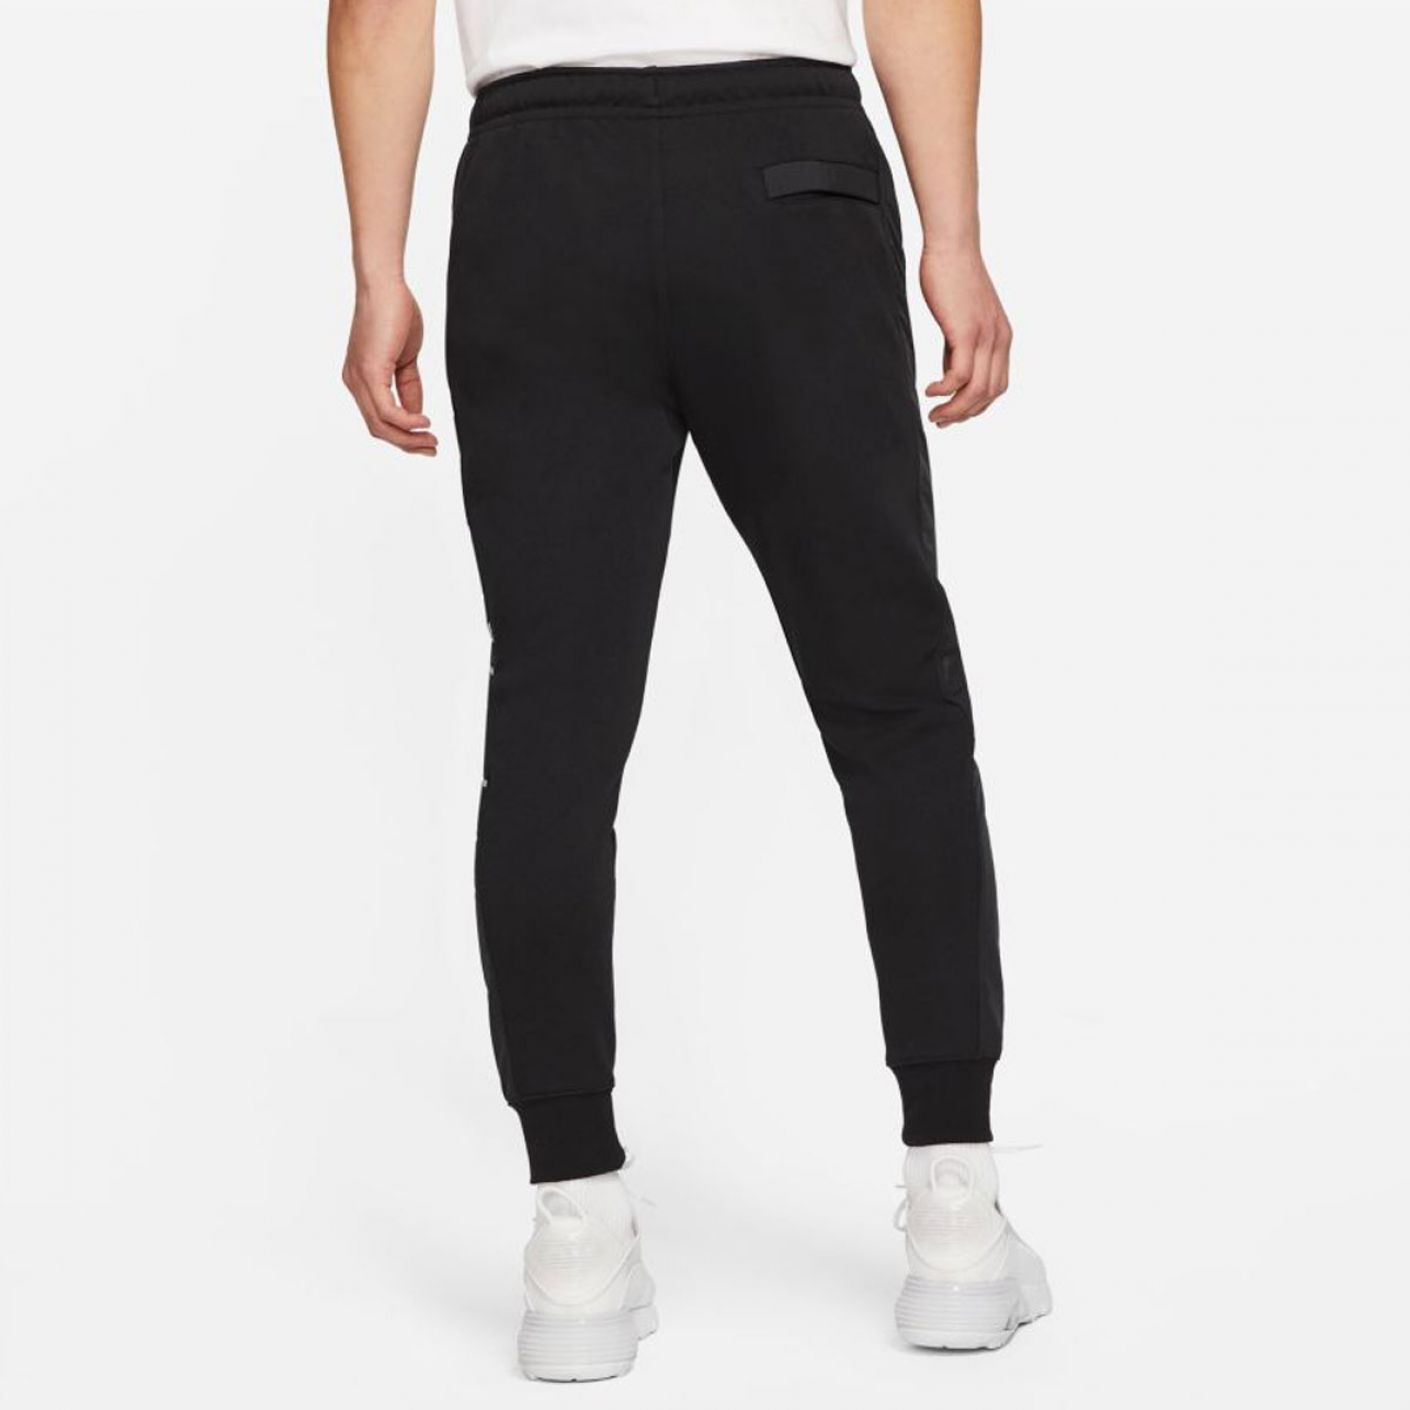 Nike Sportswear Pants Black Particle Gray White